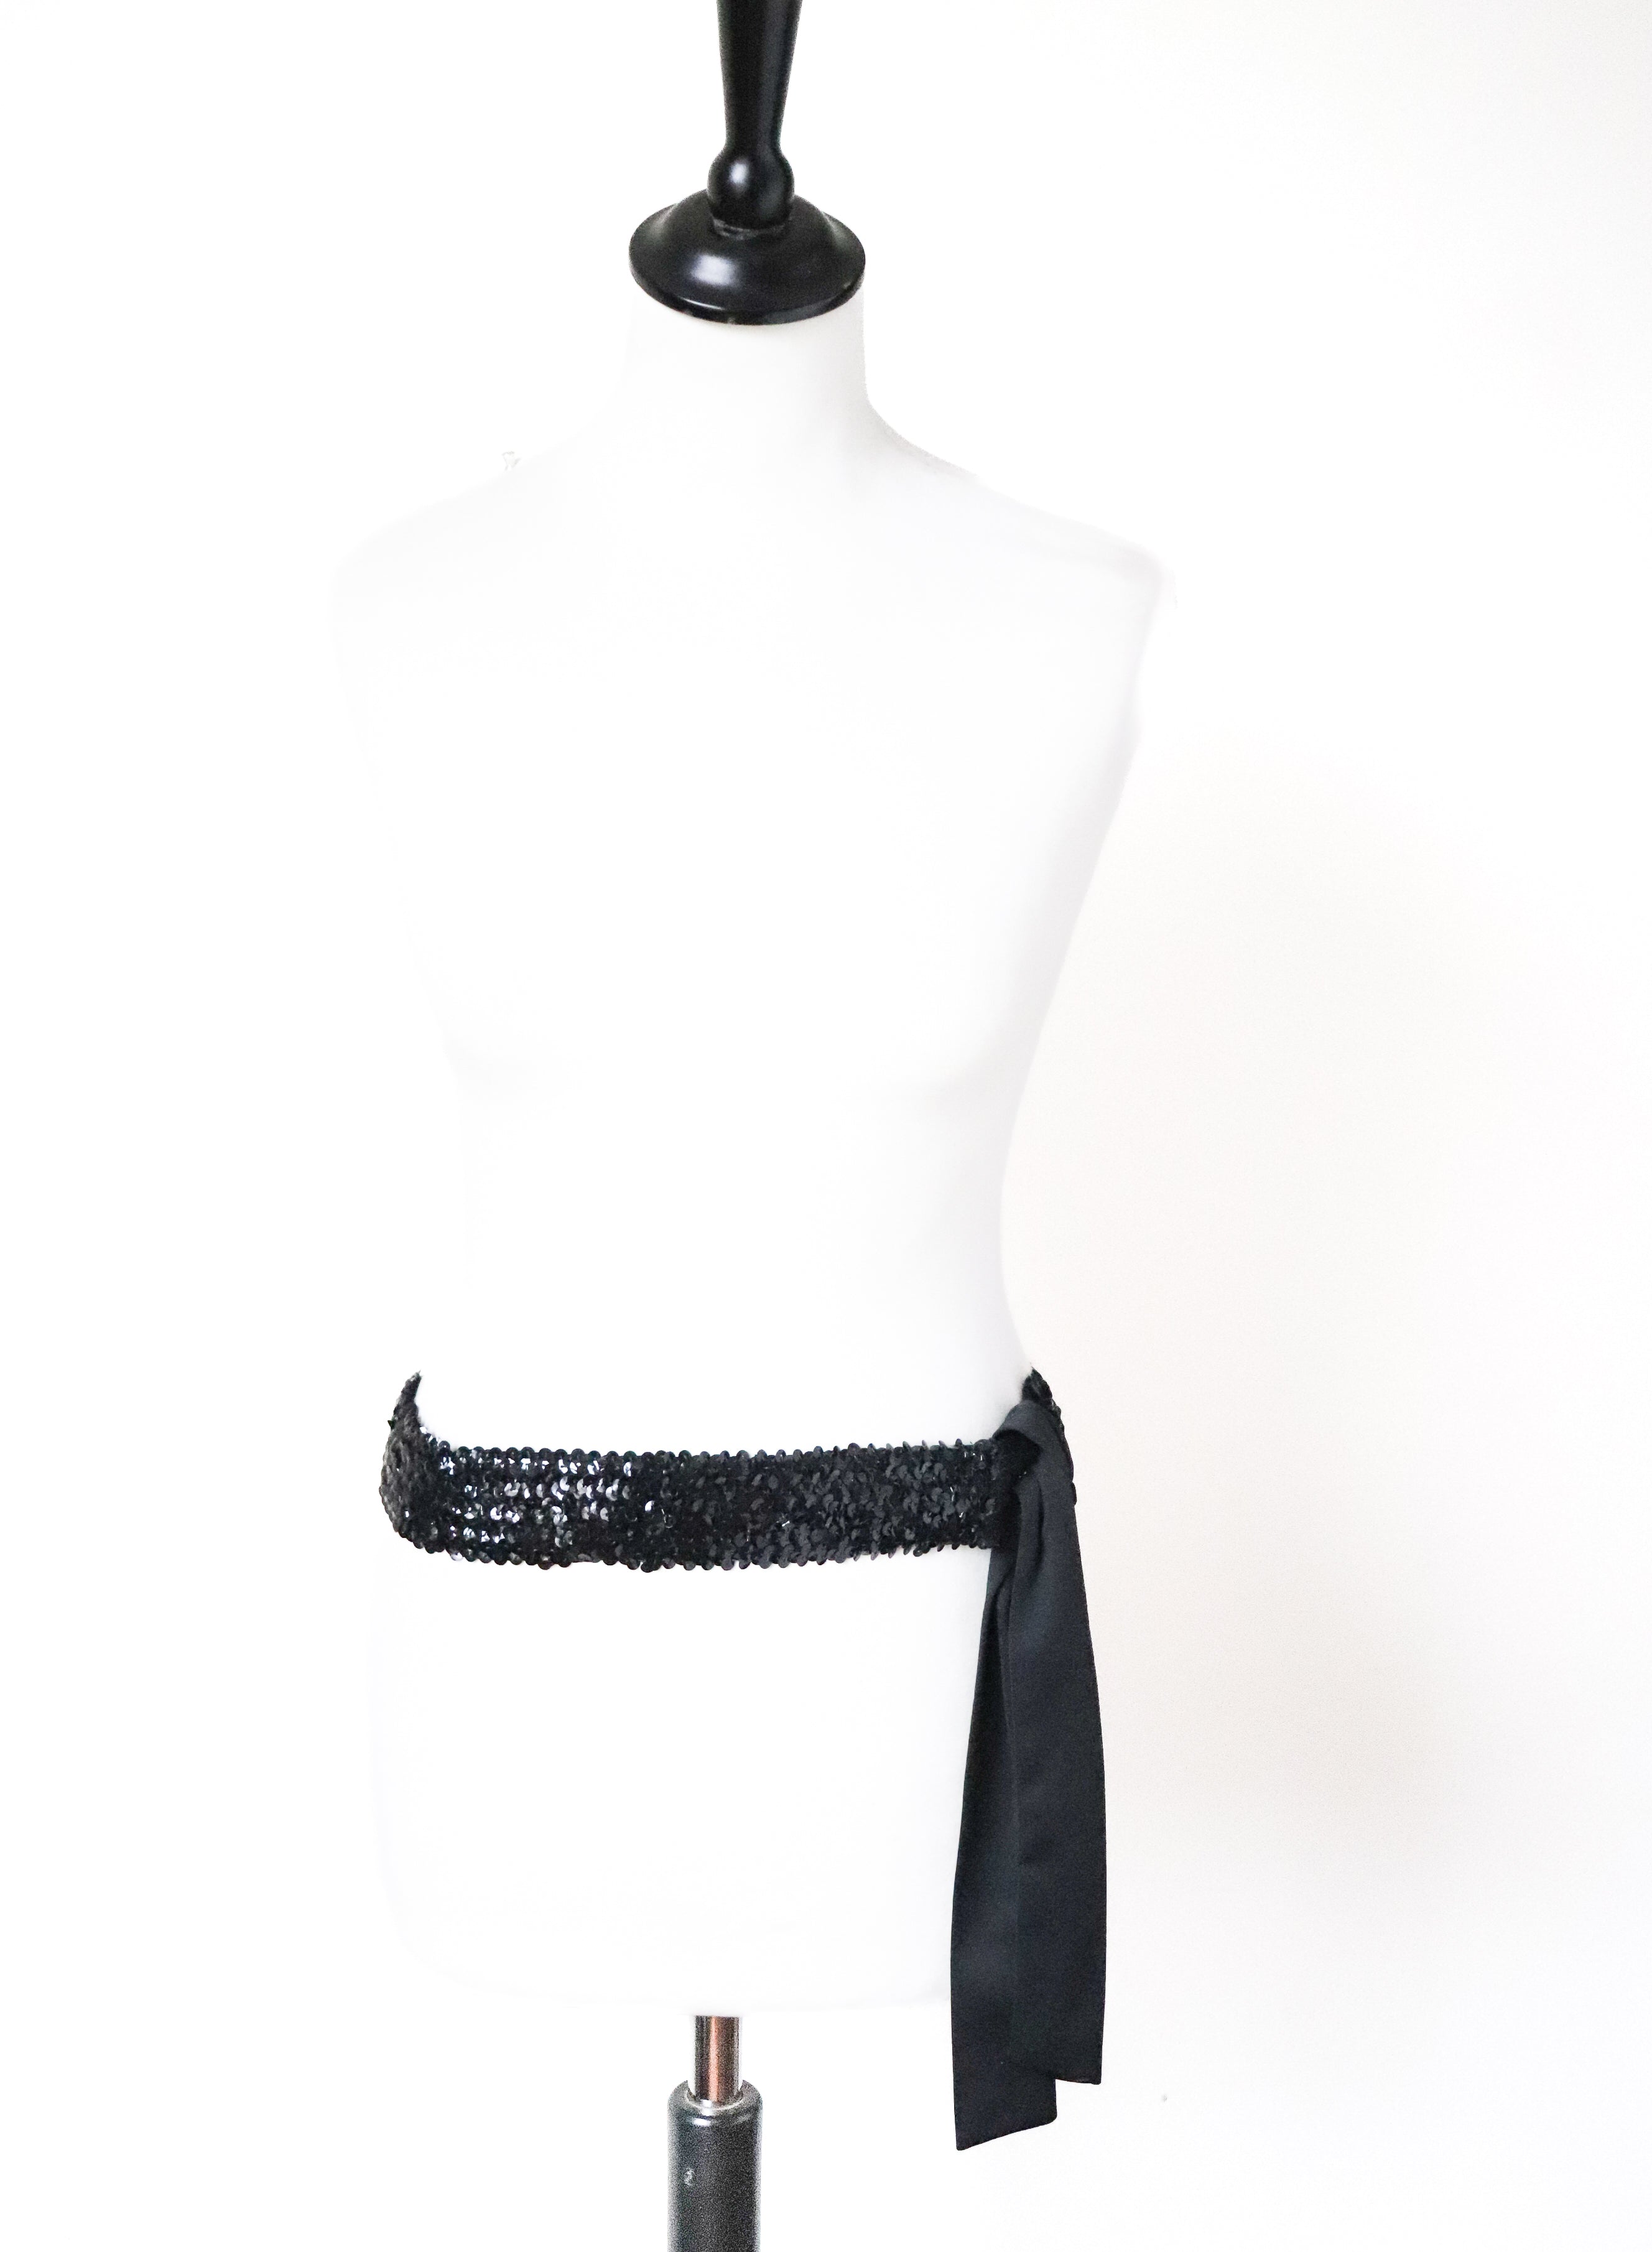 Vintage Stretchy Sequin Belt - Black Fabric - M / L